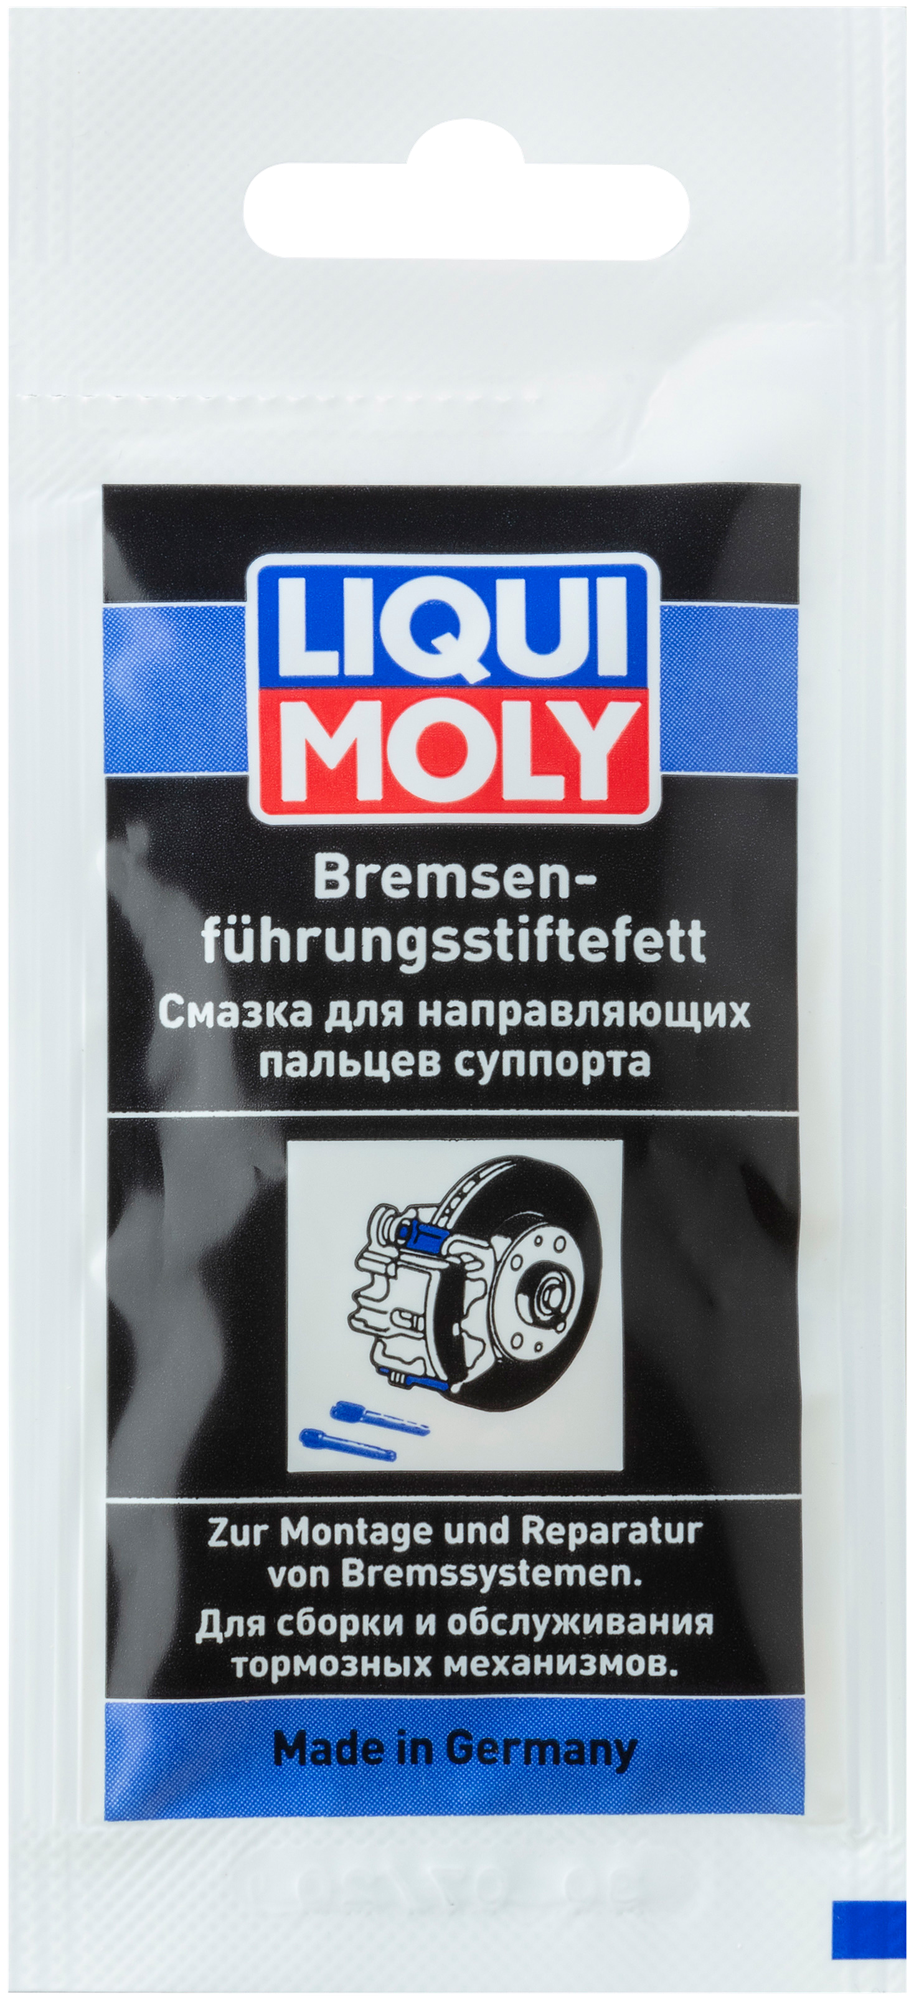 Смазка LIQUI MOLY Bremsen-führungsstiftefett